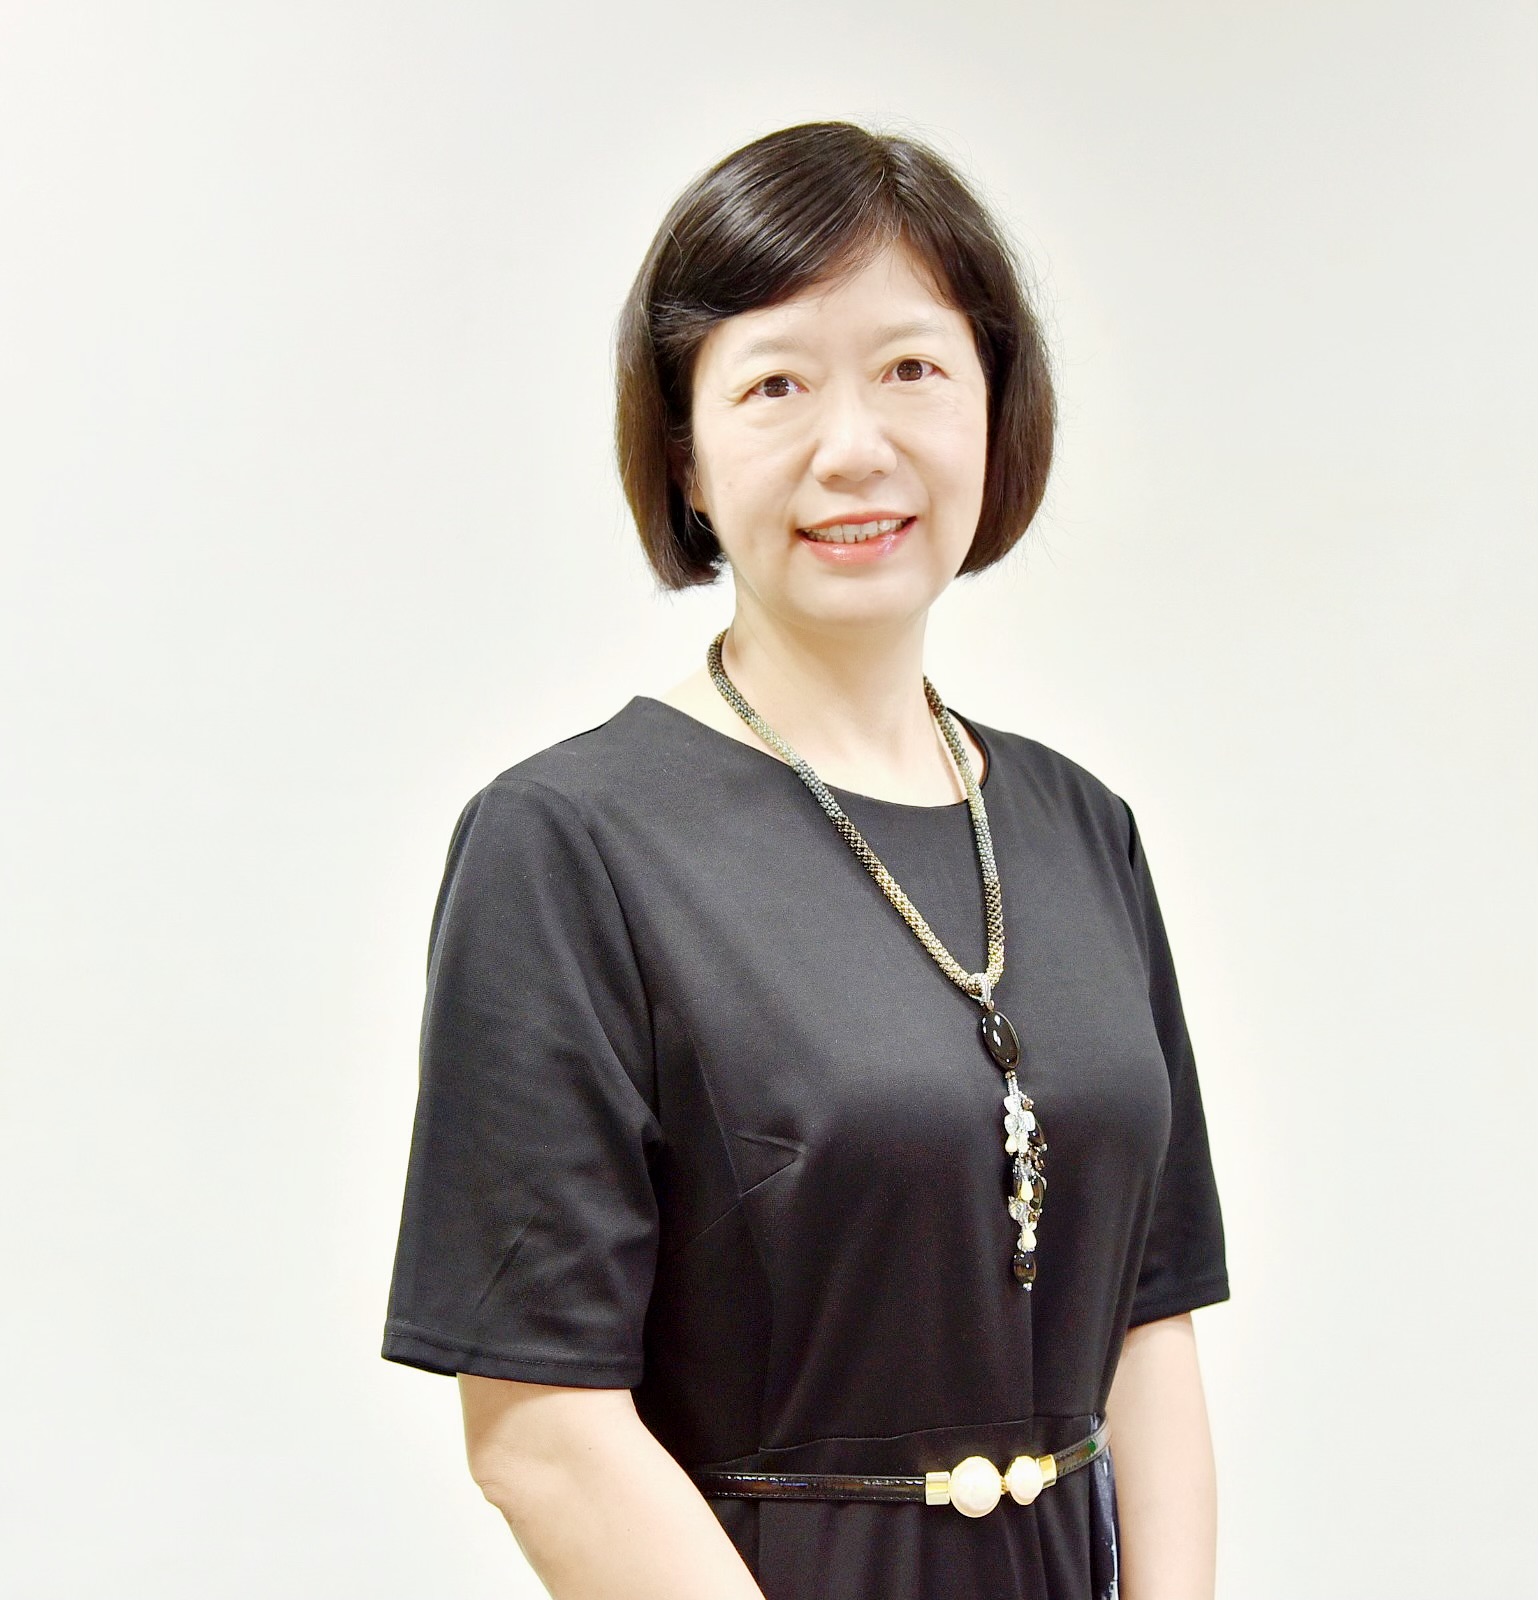  Mdm Yang Xue Hui